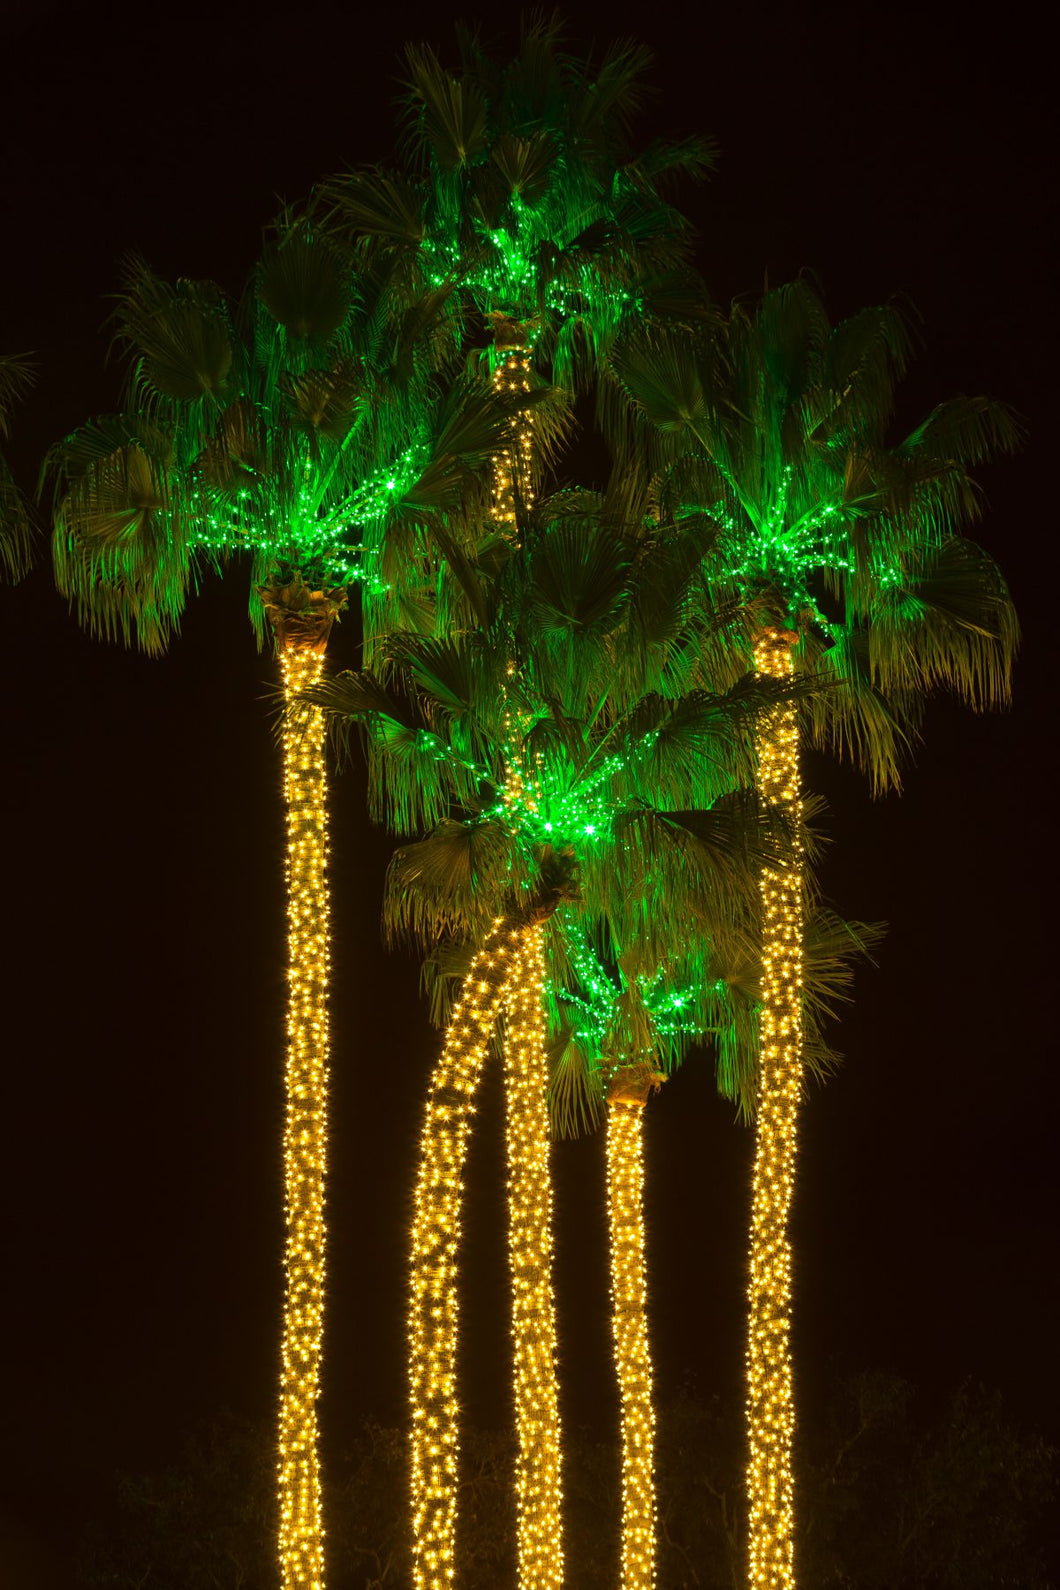 Illuminated palm trees at Dana Point Harbor, Dana Point, Orange County, California, USA